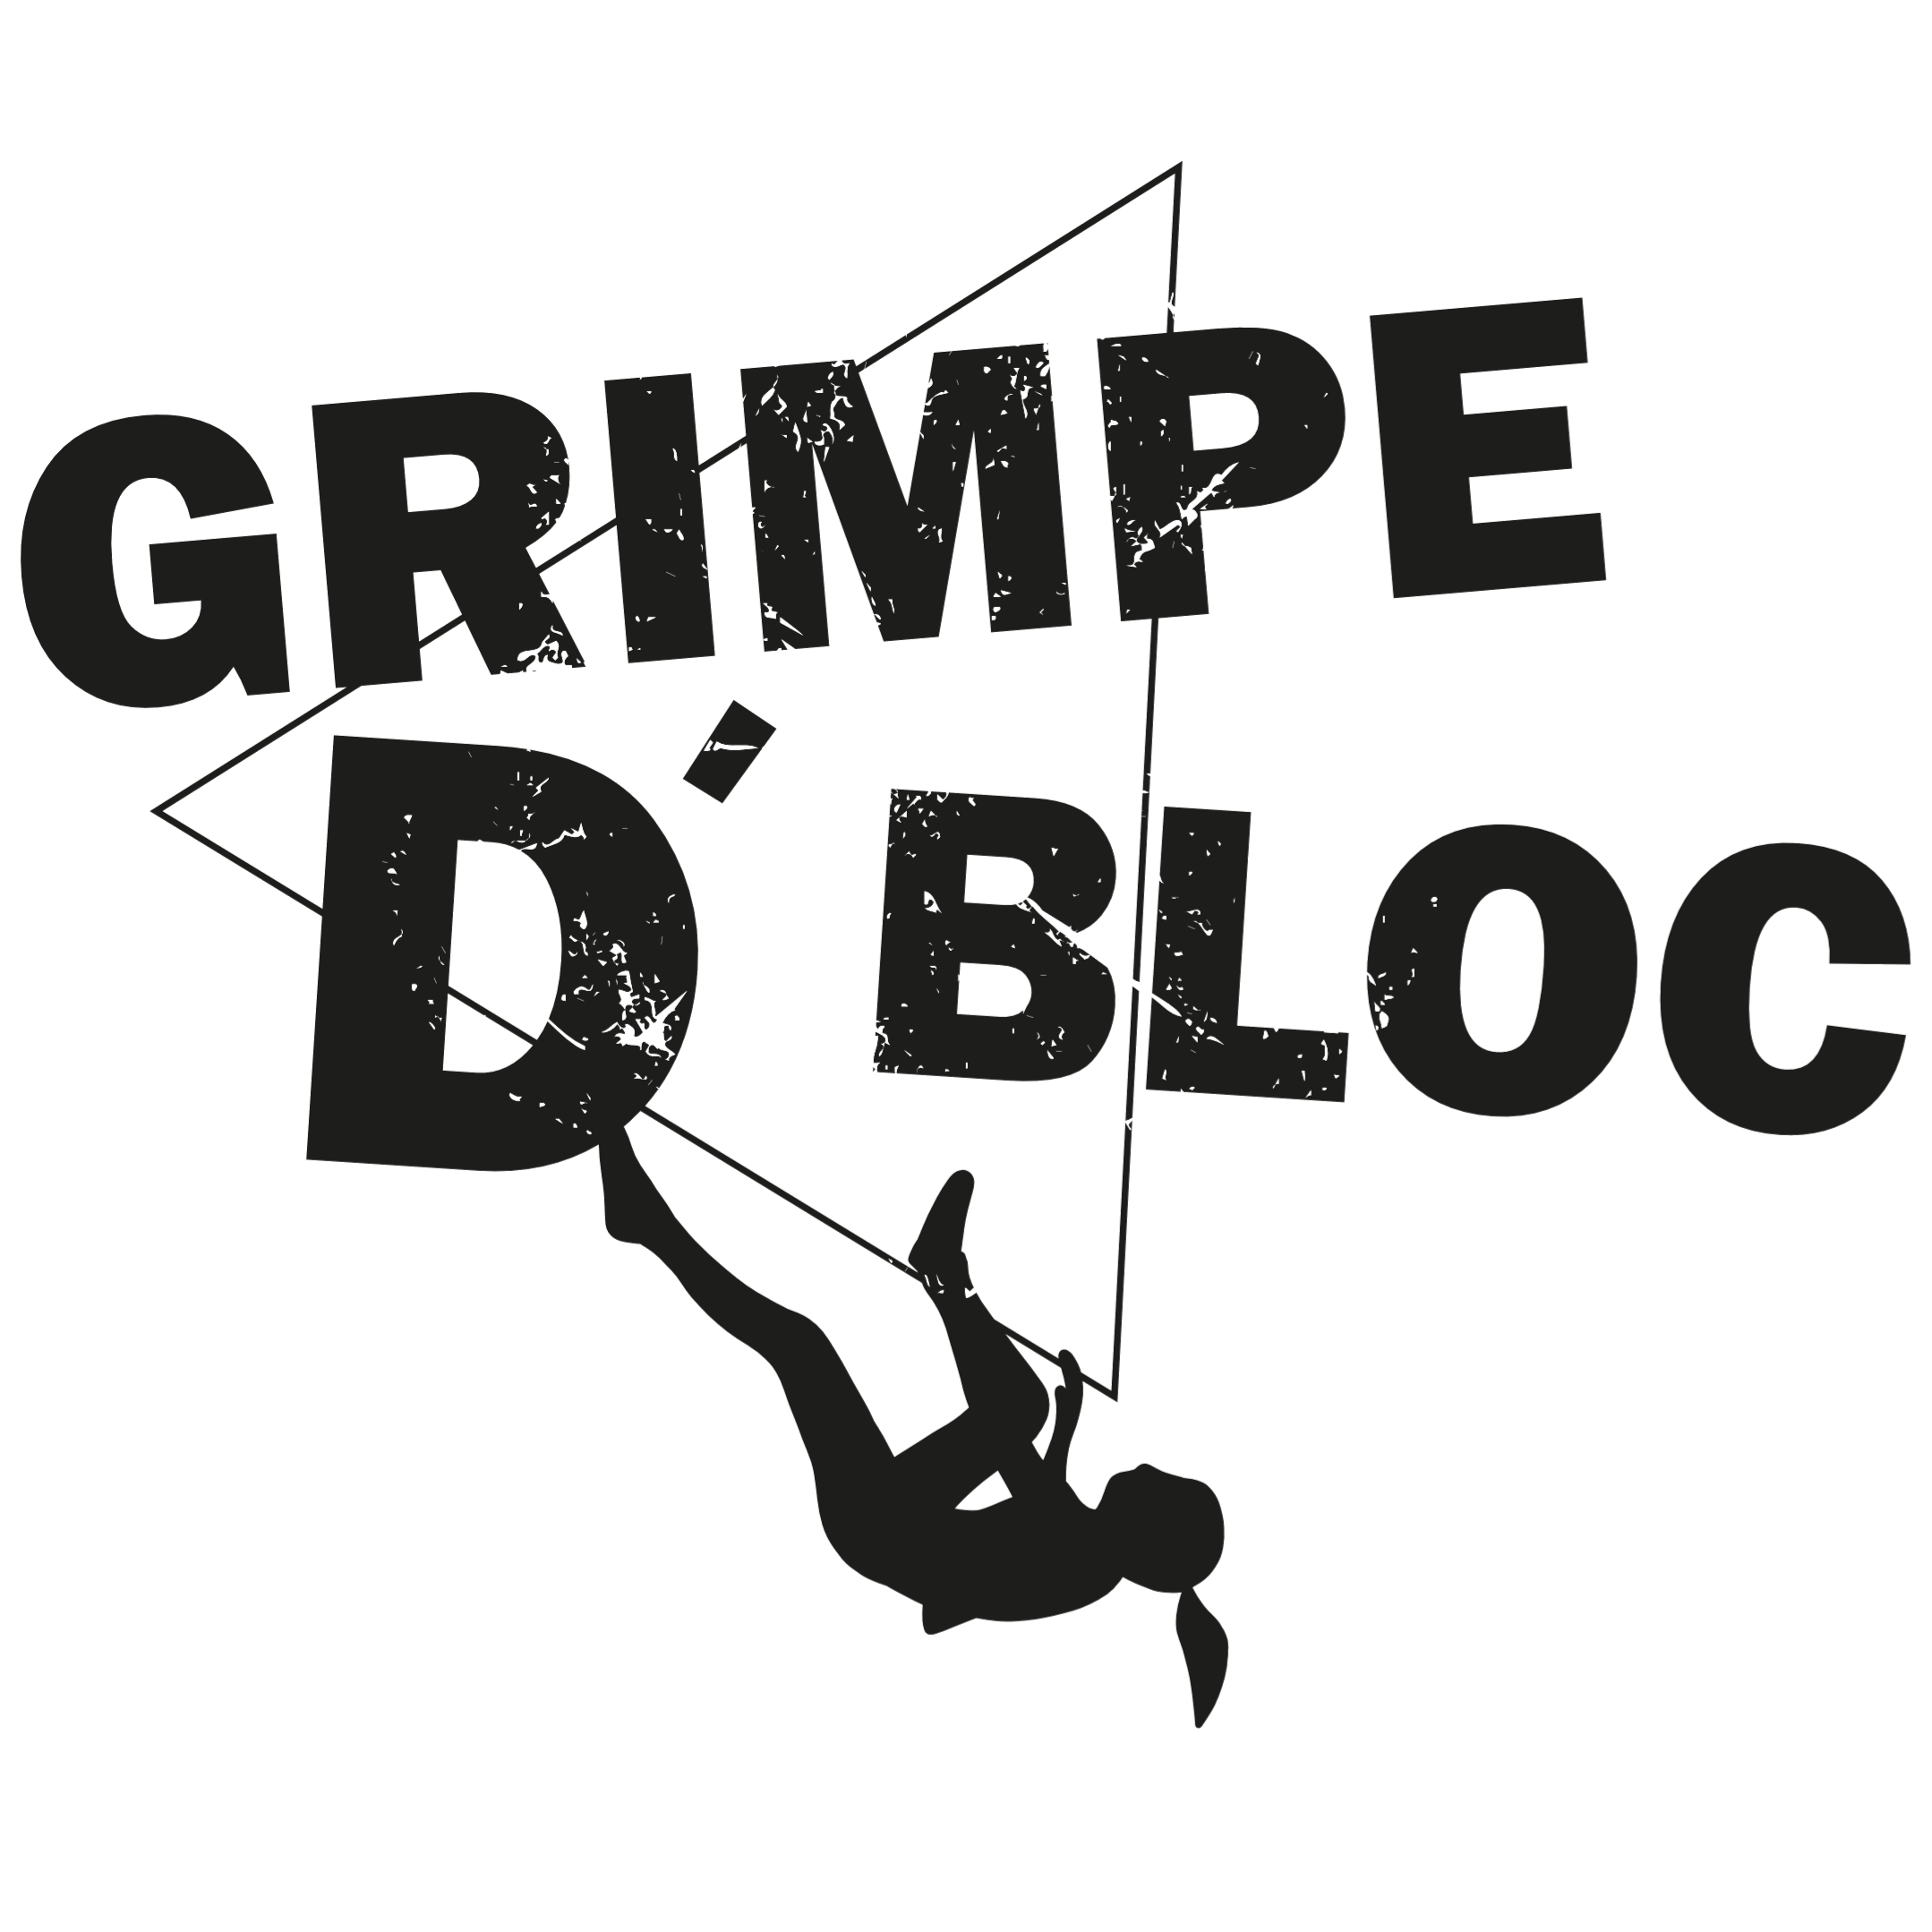 Logo Grimpedbloc